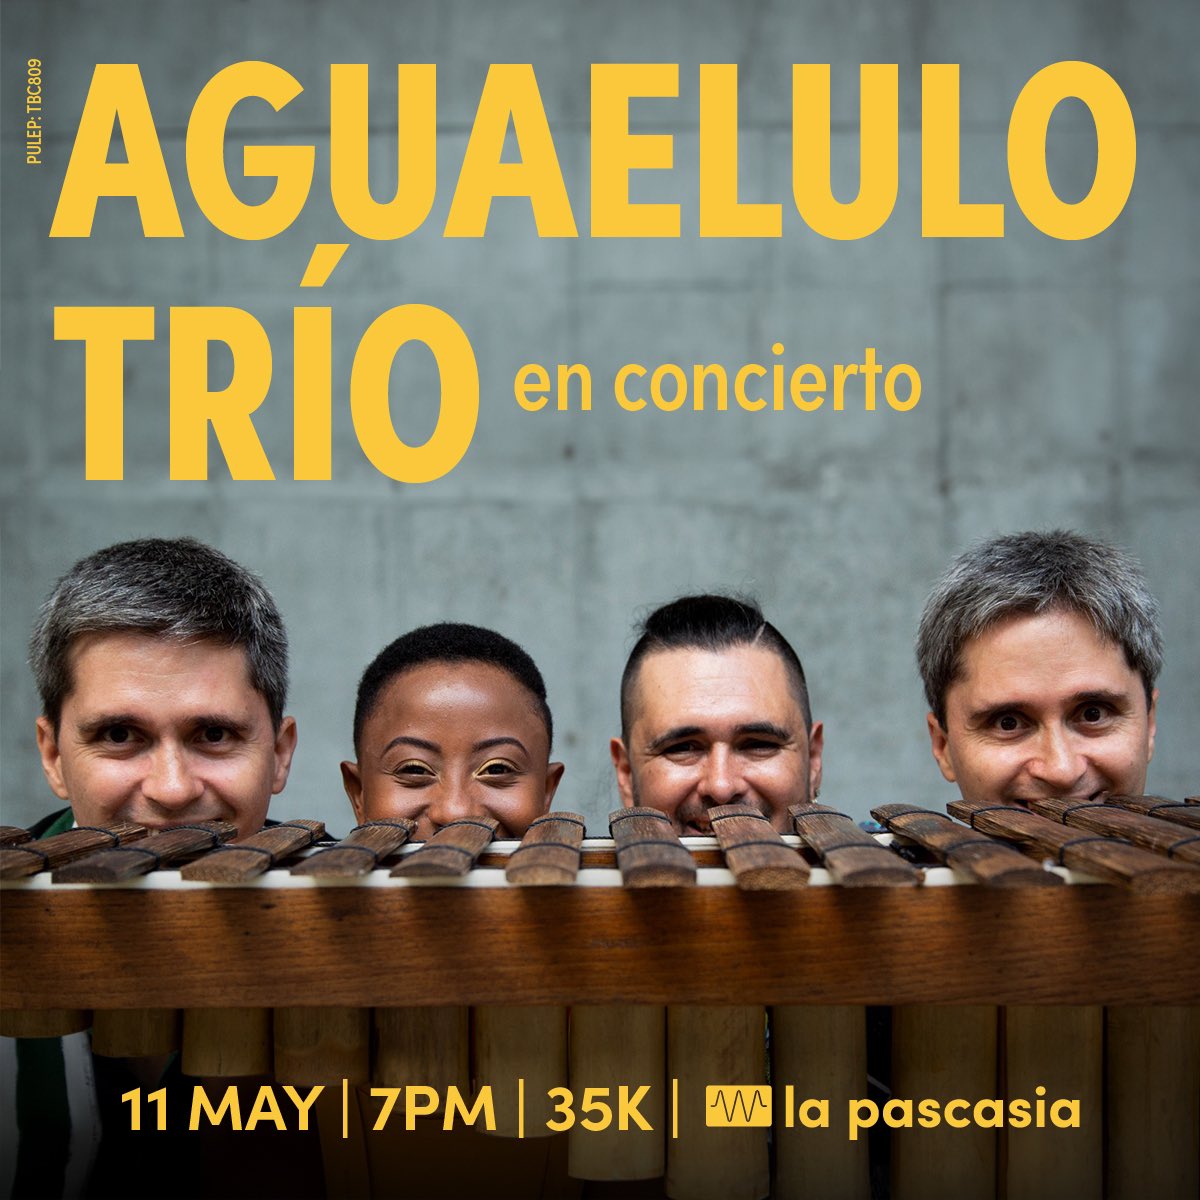 Este Sábado 11 de Mayo tendremos a @Aguaelulotrio en vivo en La Pascasia junto a #LiannyLaVoz en un concierto lleno de texturas sonoras del litoral Pacífico colombiano: Abozao, currulaos, jugas,bundes, levantapolvo y aguabajo.
🎉🎊Los esperamos🎊🎉